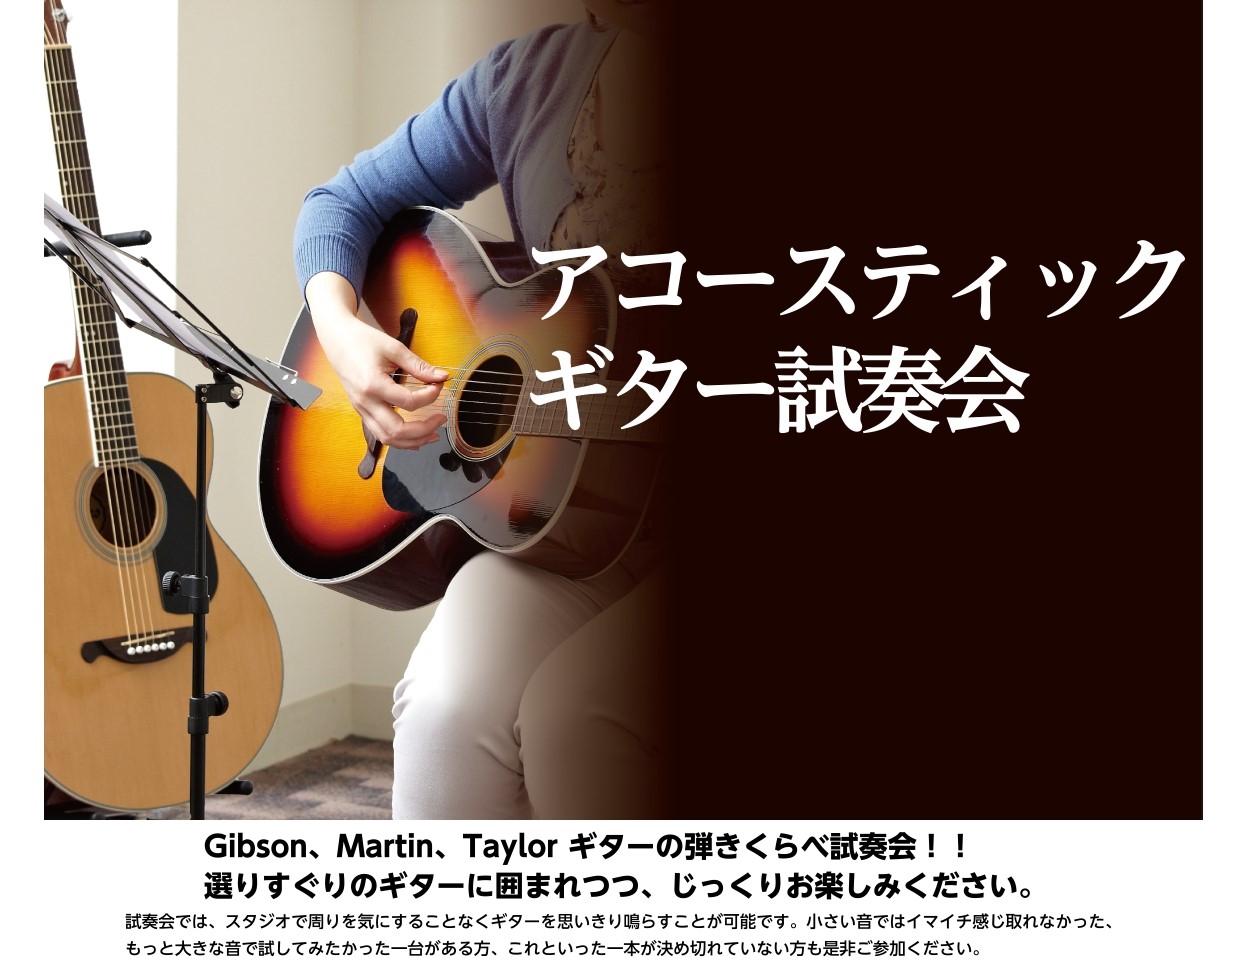 *人気のギター期間限定展示中！ 島村楽器ミュージックサロン瑞江では、期間限定で下記のアコースティックギターを展示致します。]]期間中は、どなたでも試奏可能です！]]ご予約制となっておりますので、お気軽にお電話にてお問合せ下さい。 |*試奏可能期間|2019年7月19日(金)～2019年7月28日(日 […]